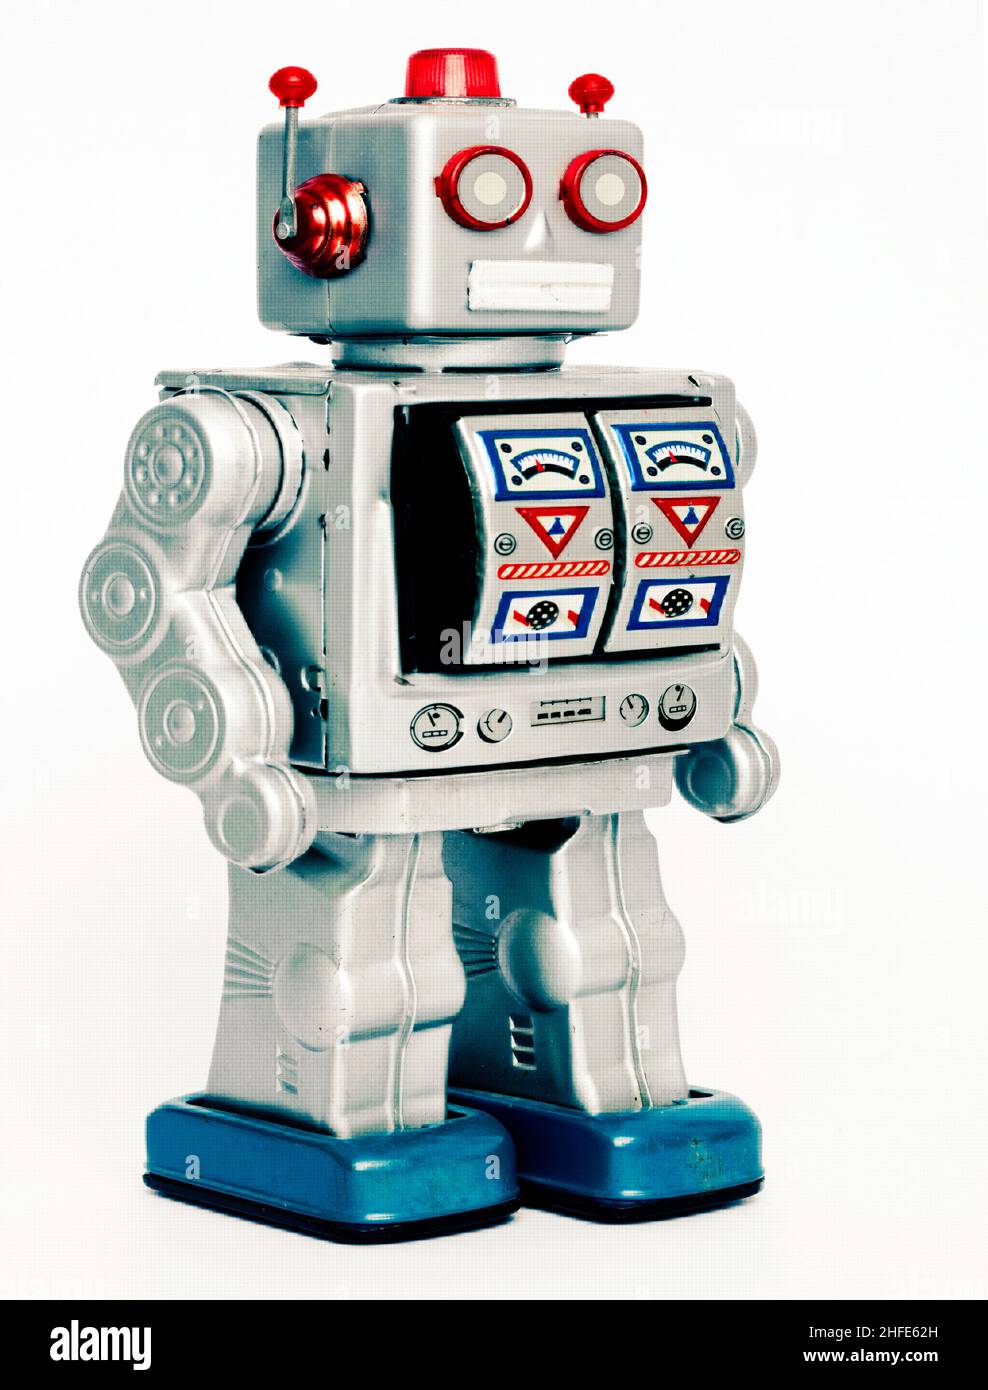 retro robot toy  on a white background Stock Photo